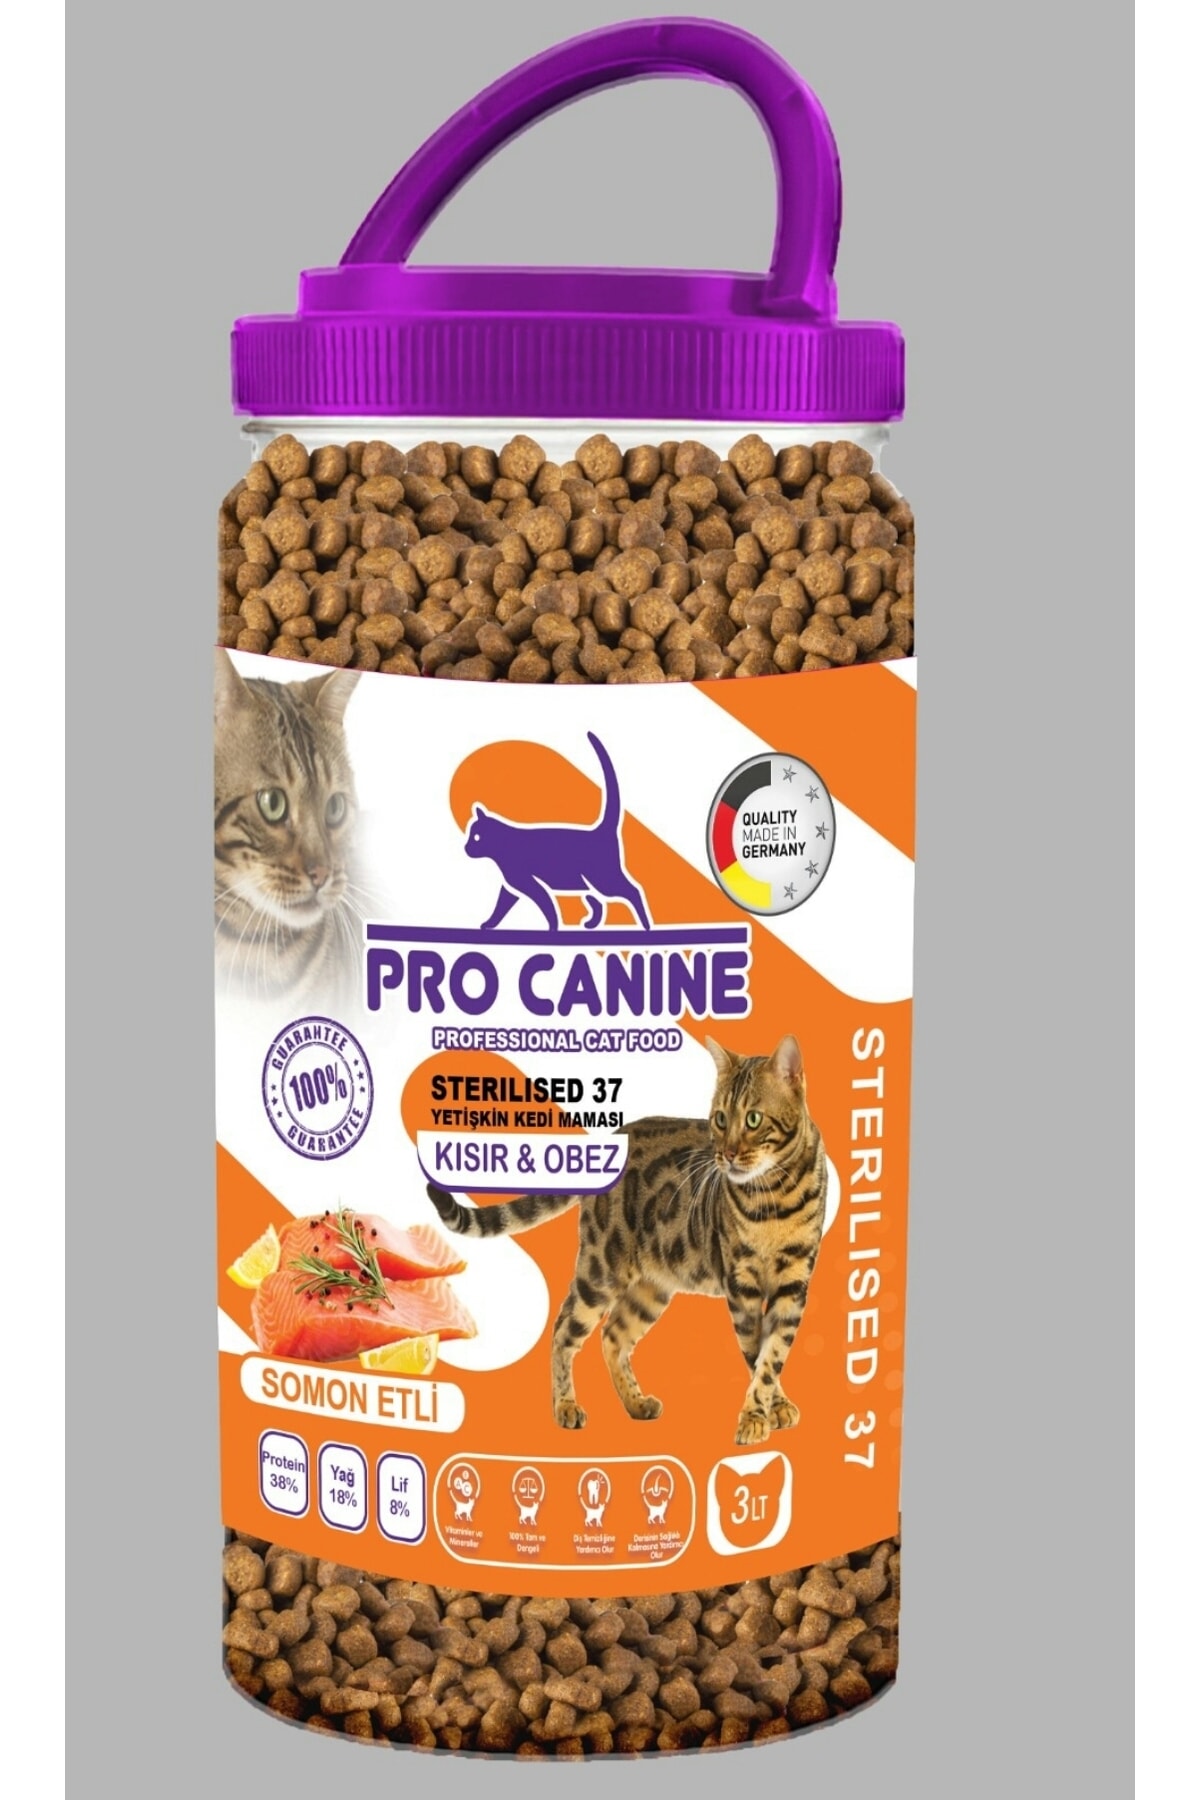 PRO CANINE Az Tahıllı Hypoallergenic Somonlu Kısır & Obez Sterilised 37 Yetişkin Kedi Maması 3 Lt